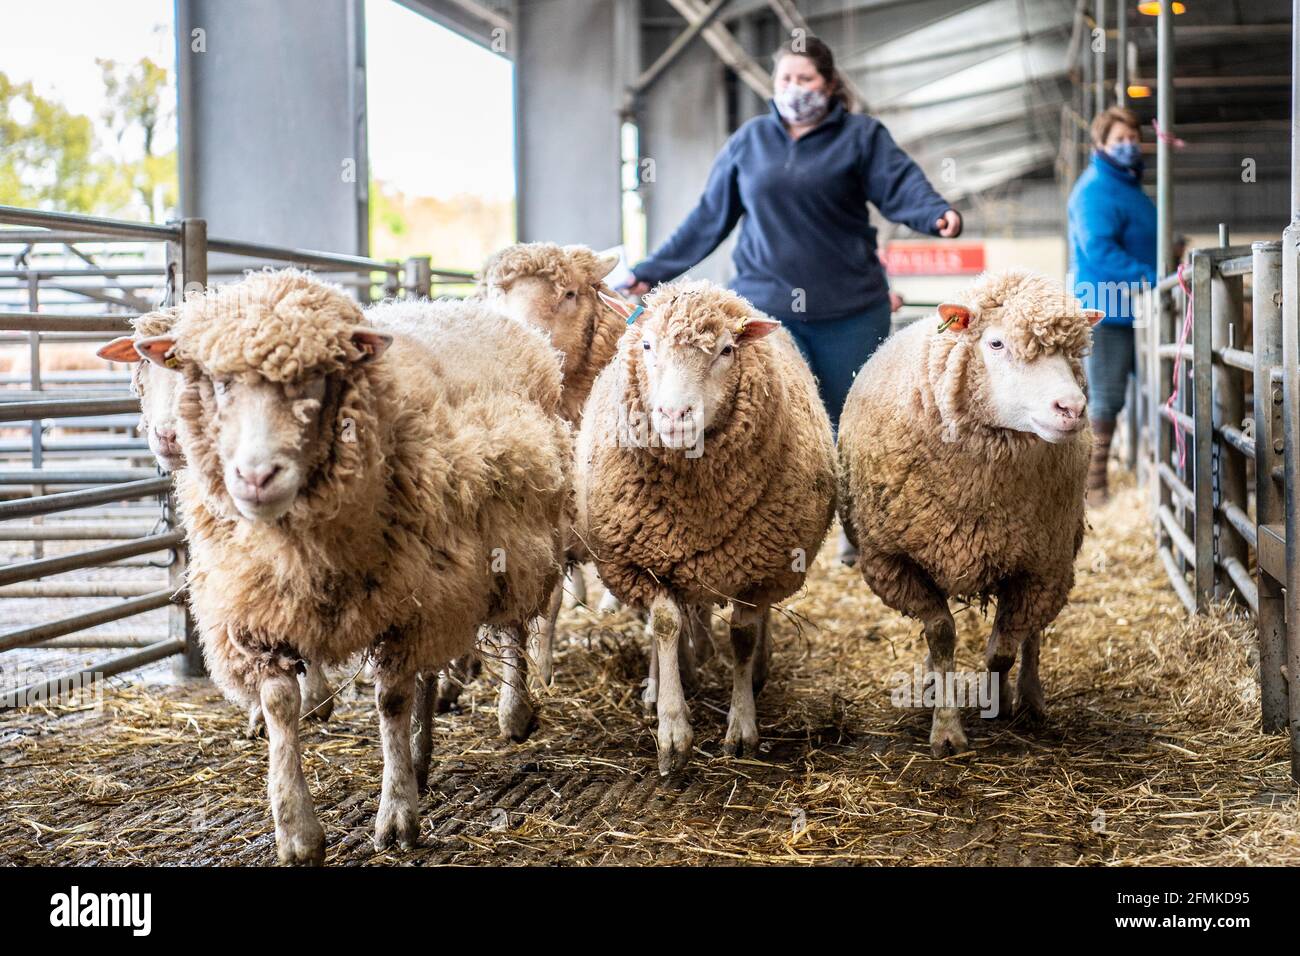 sheep at sheep market Stock Photo